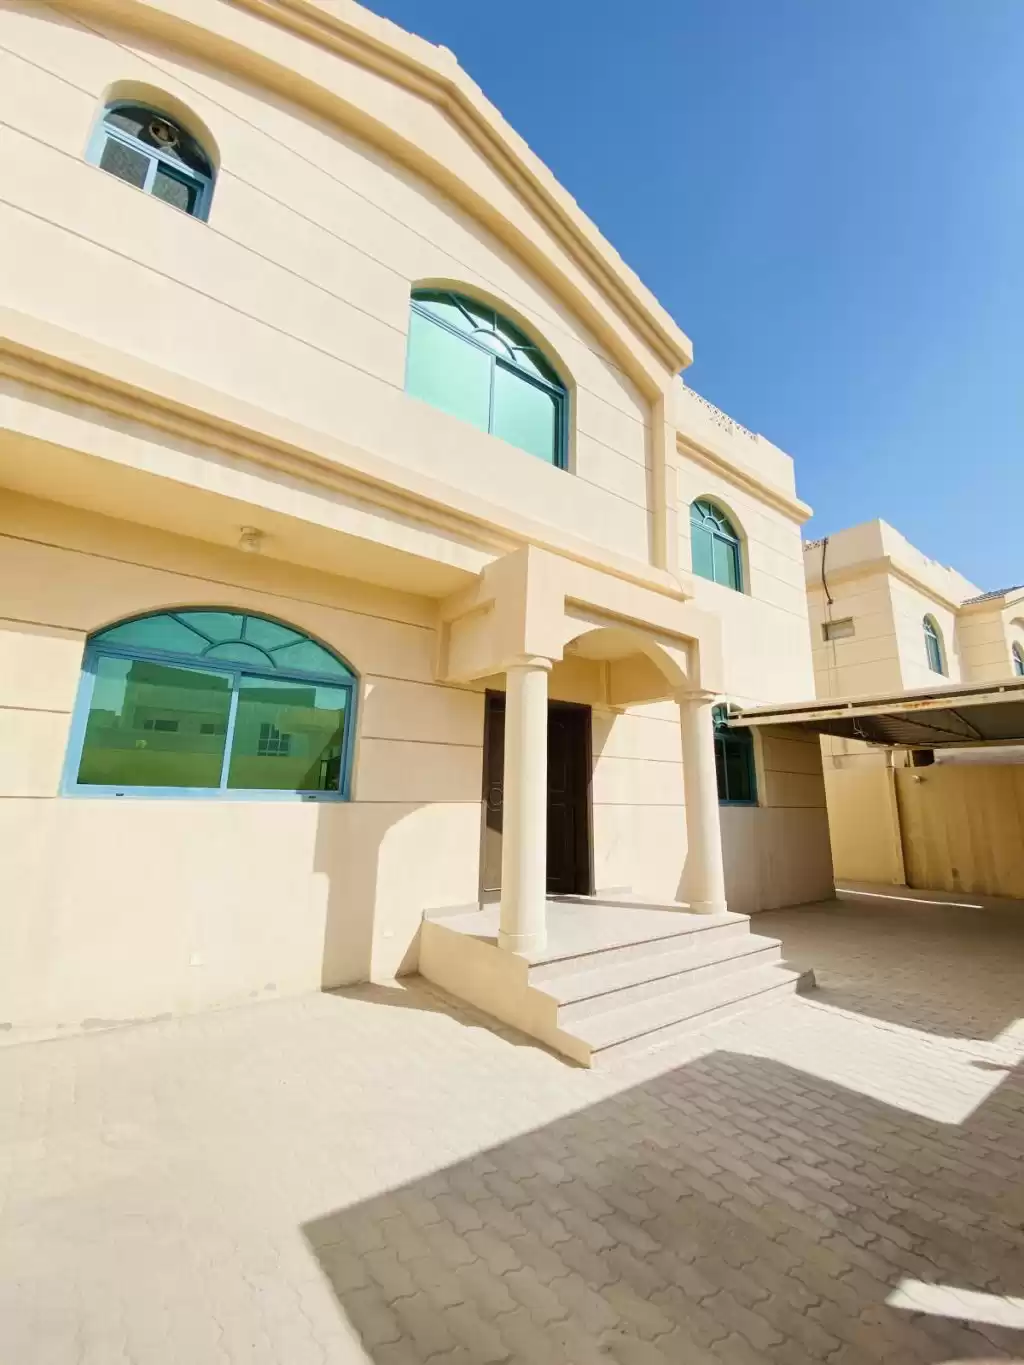 Résidentiel Propriété prête 5 chambres U / f Villa autonome  a louer au Al-Sadd , Doha #11154 - 1  image 